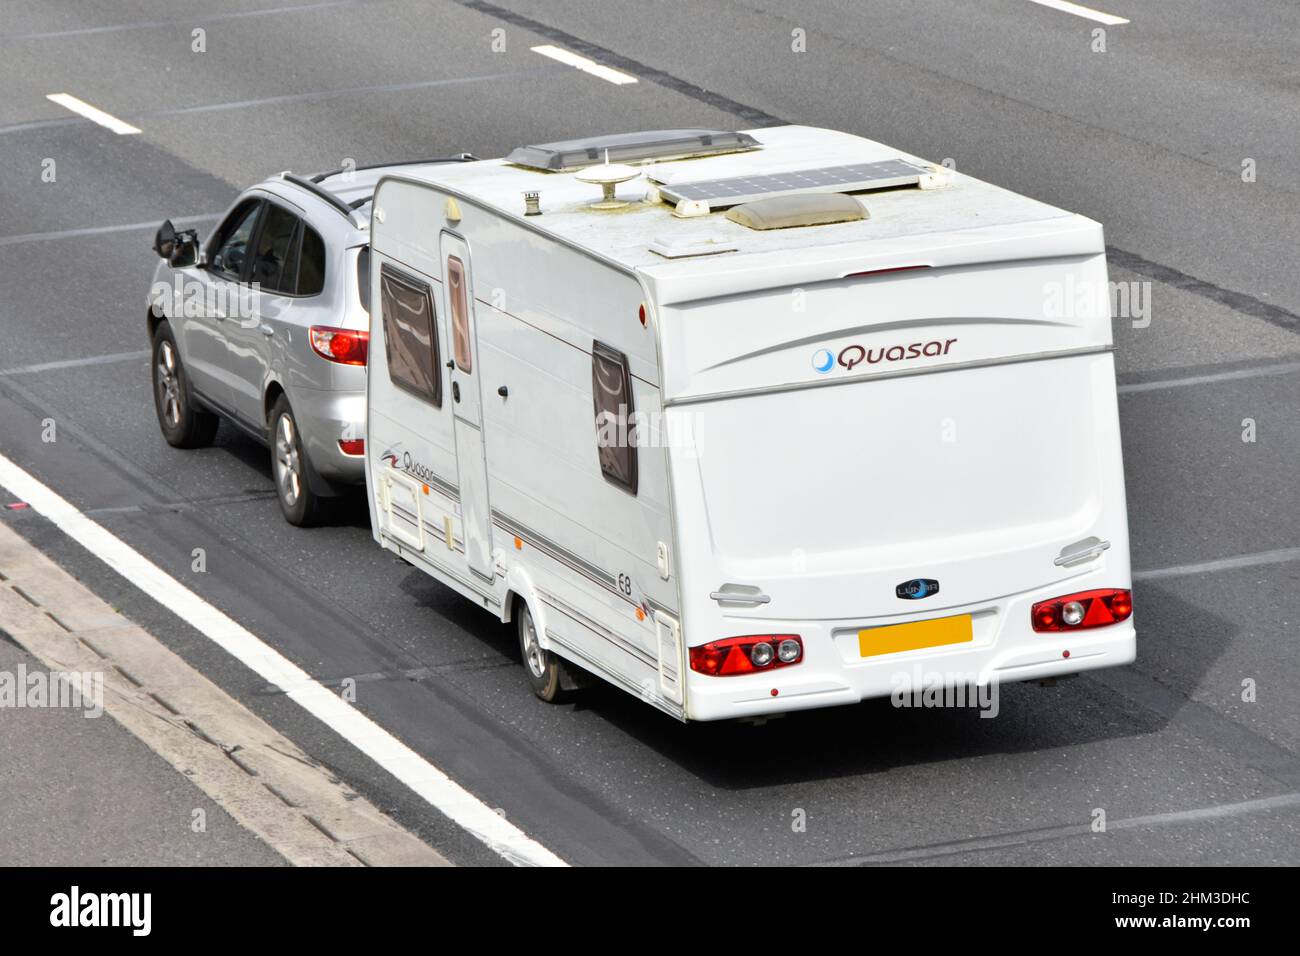 Holiday caravan Quosar marchio vista aerea tetto montato pannello solare televisione antenna gas fumé vent & tetto vista laterale auto traino sulla strada autostrada UK Foto Stock